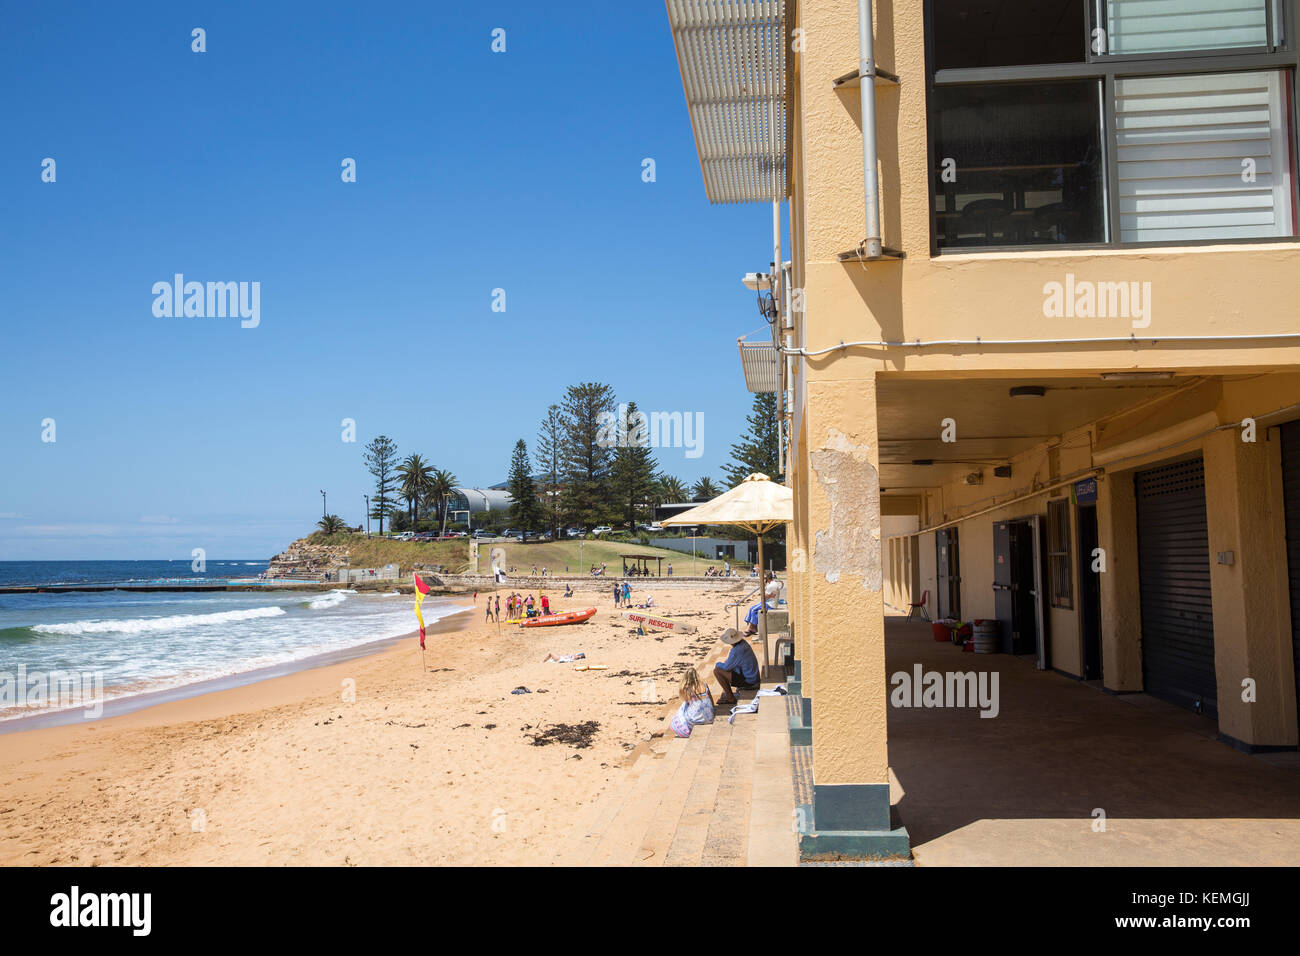 Y Collaroy Collaroy beach club salvavidas de Surf en las playas del norte de Sydney, Nueva Gales del Sur, Australia Foto de stock